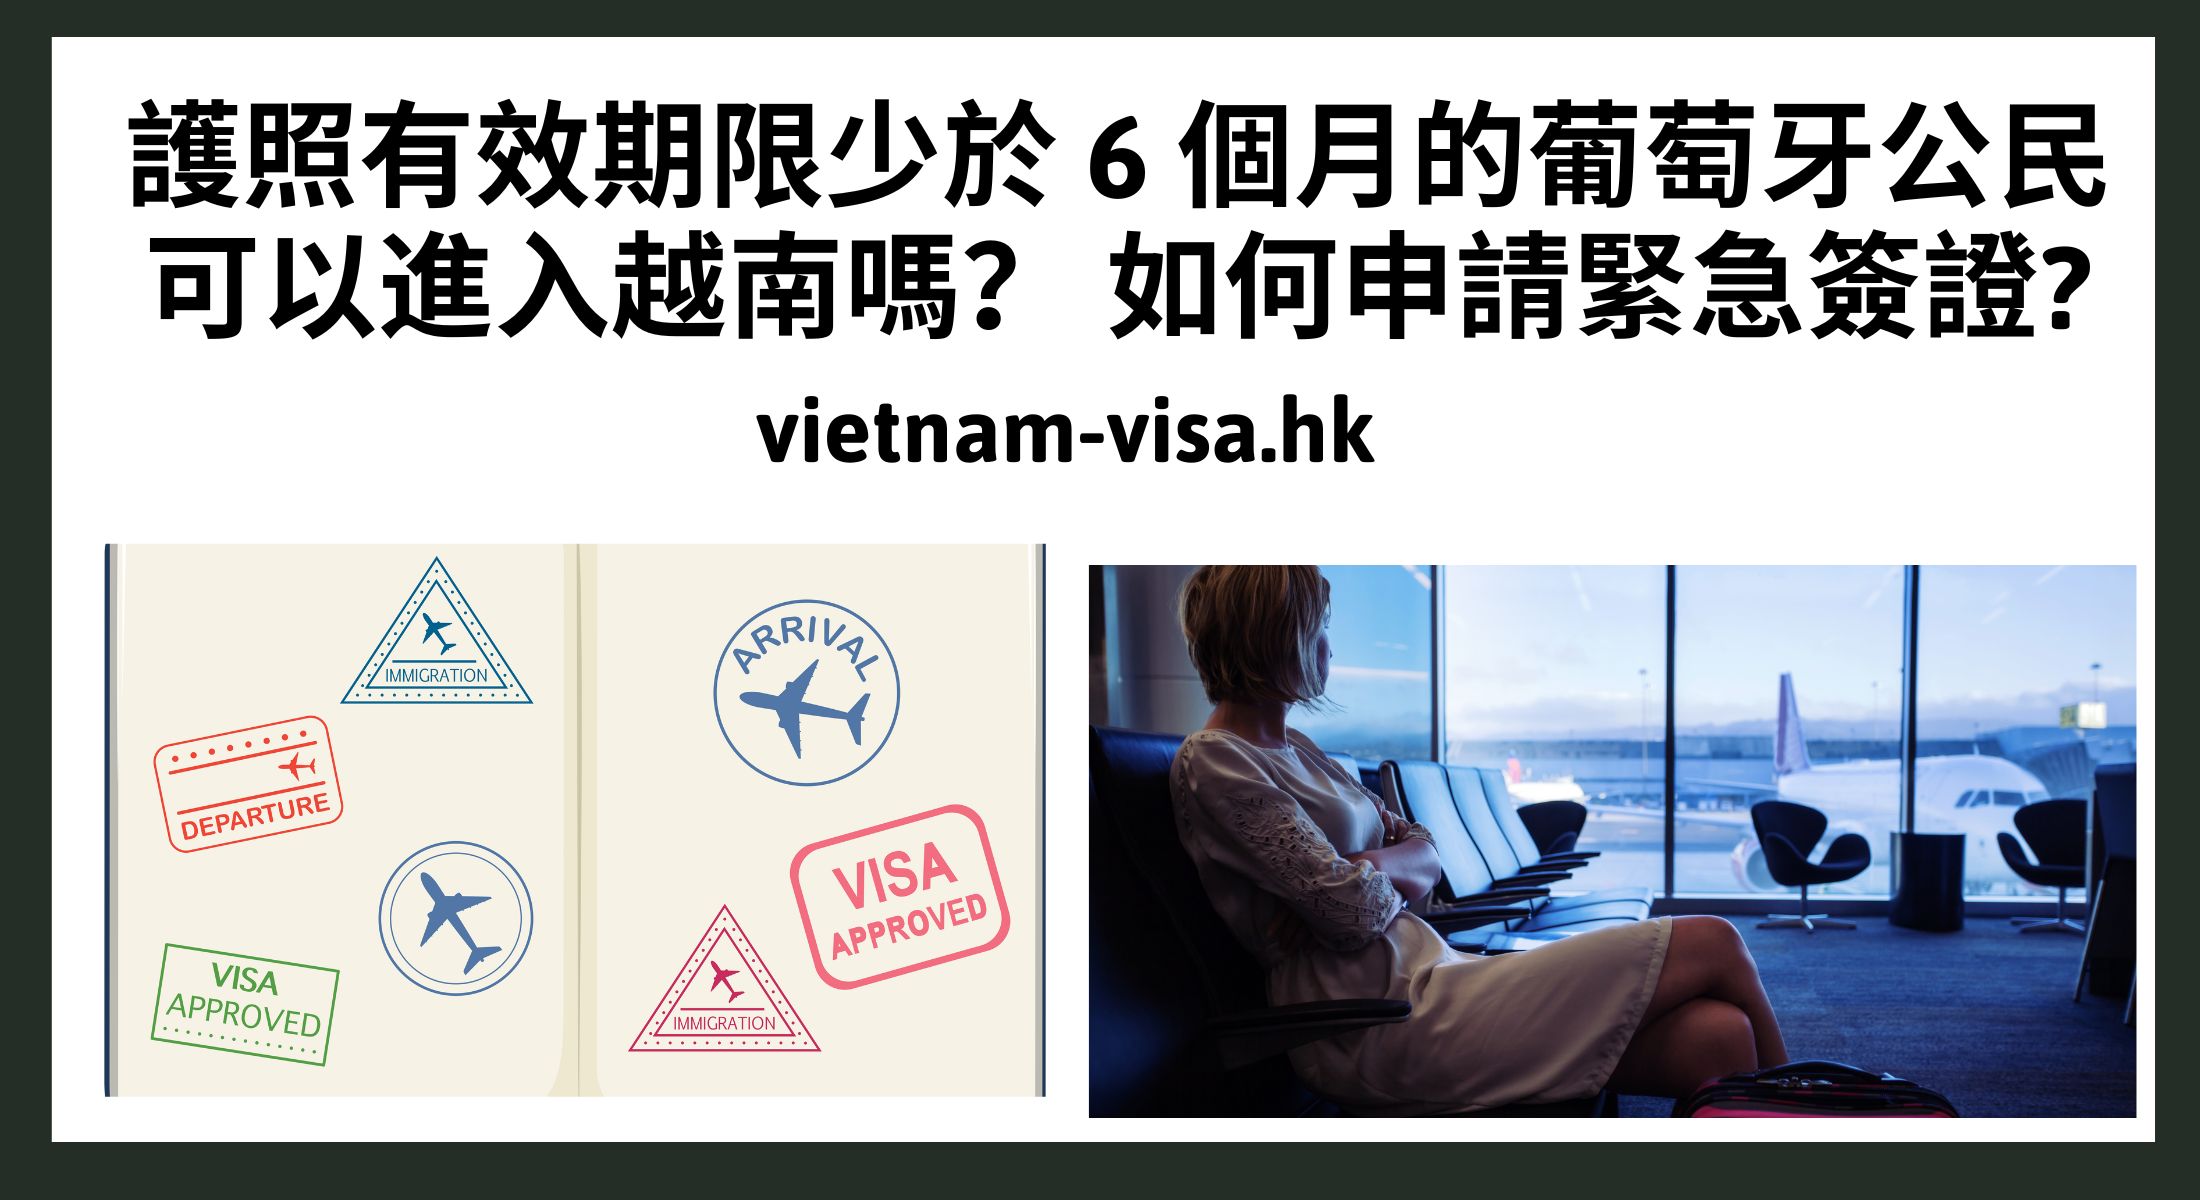 護照有效期限少於 6 個月的葡萄牙公民可以進入越南嗎？ 如何申請緊急簽證?